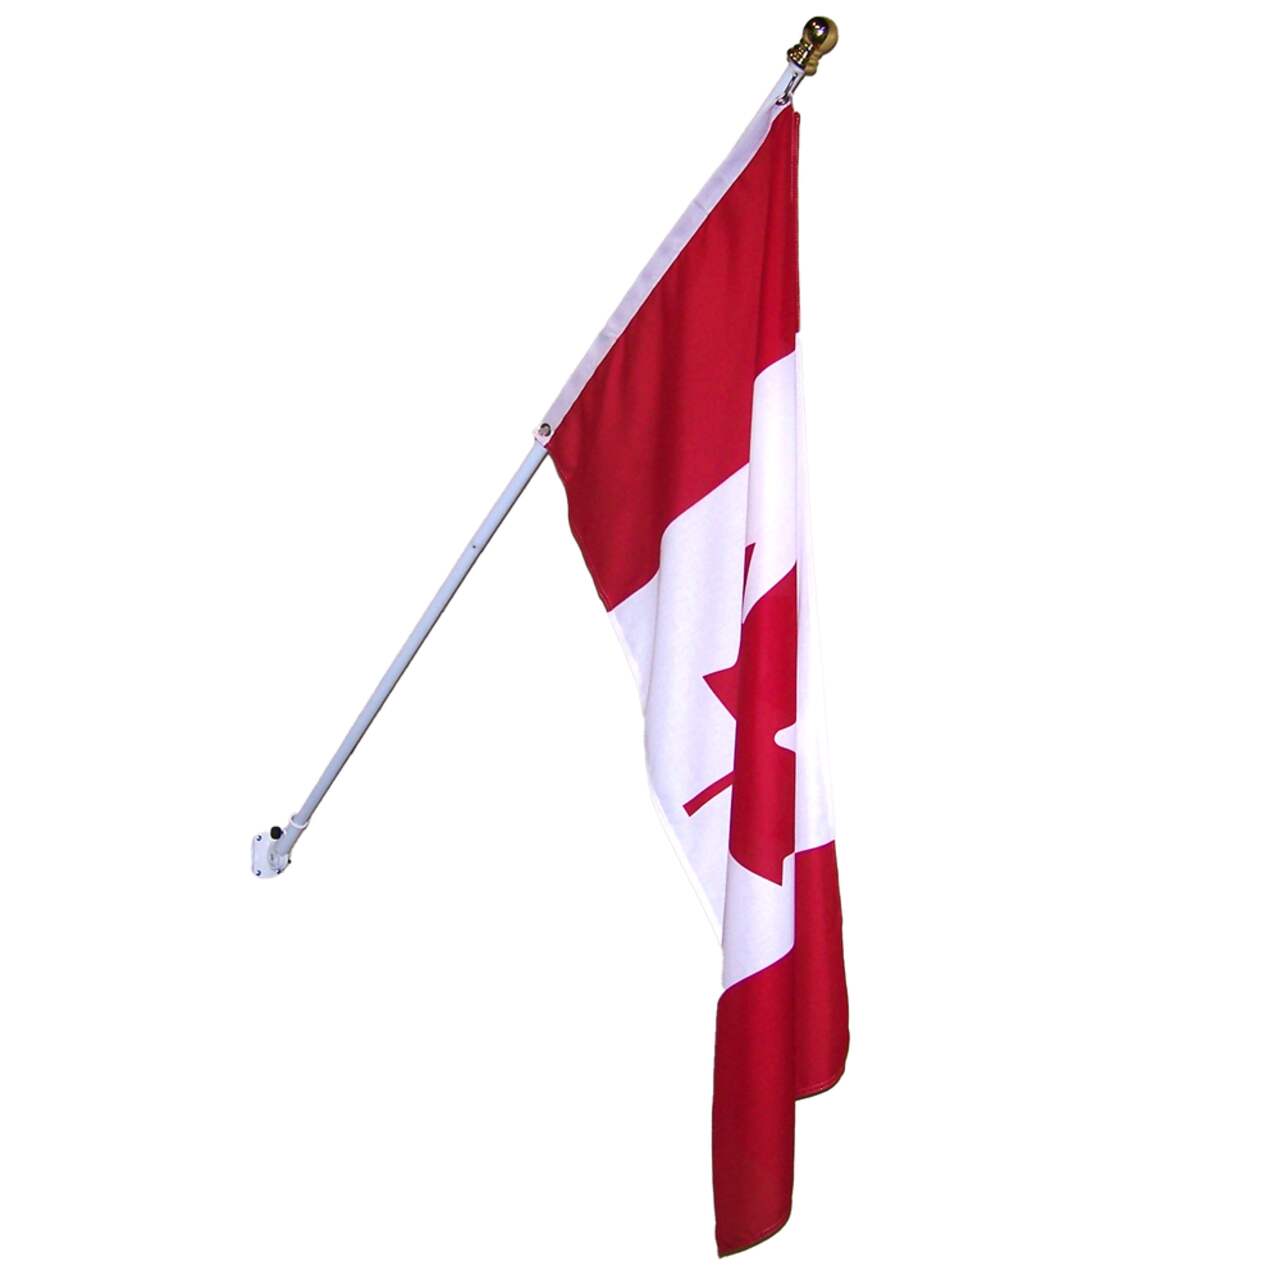 Drapeau du Canada - Drapeau Officiel pour mât